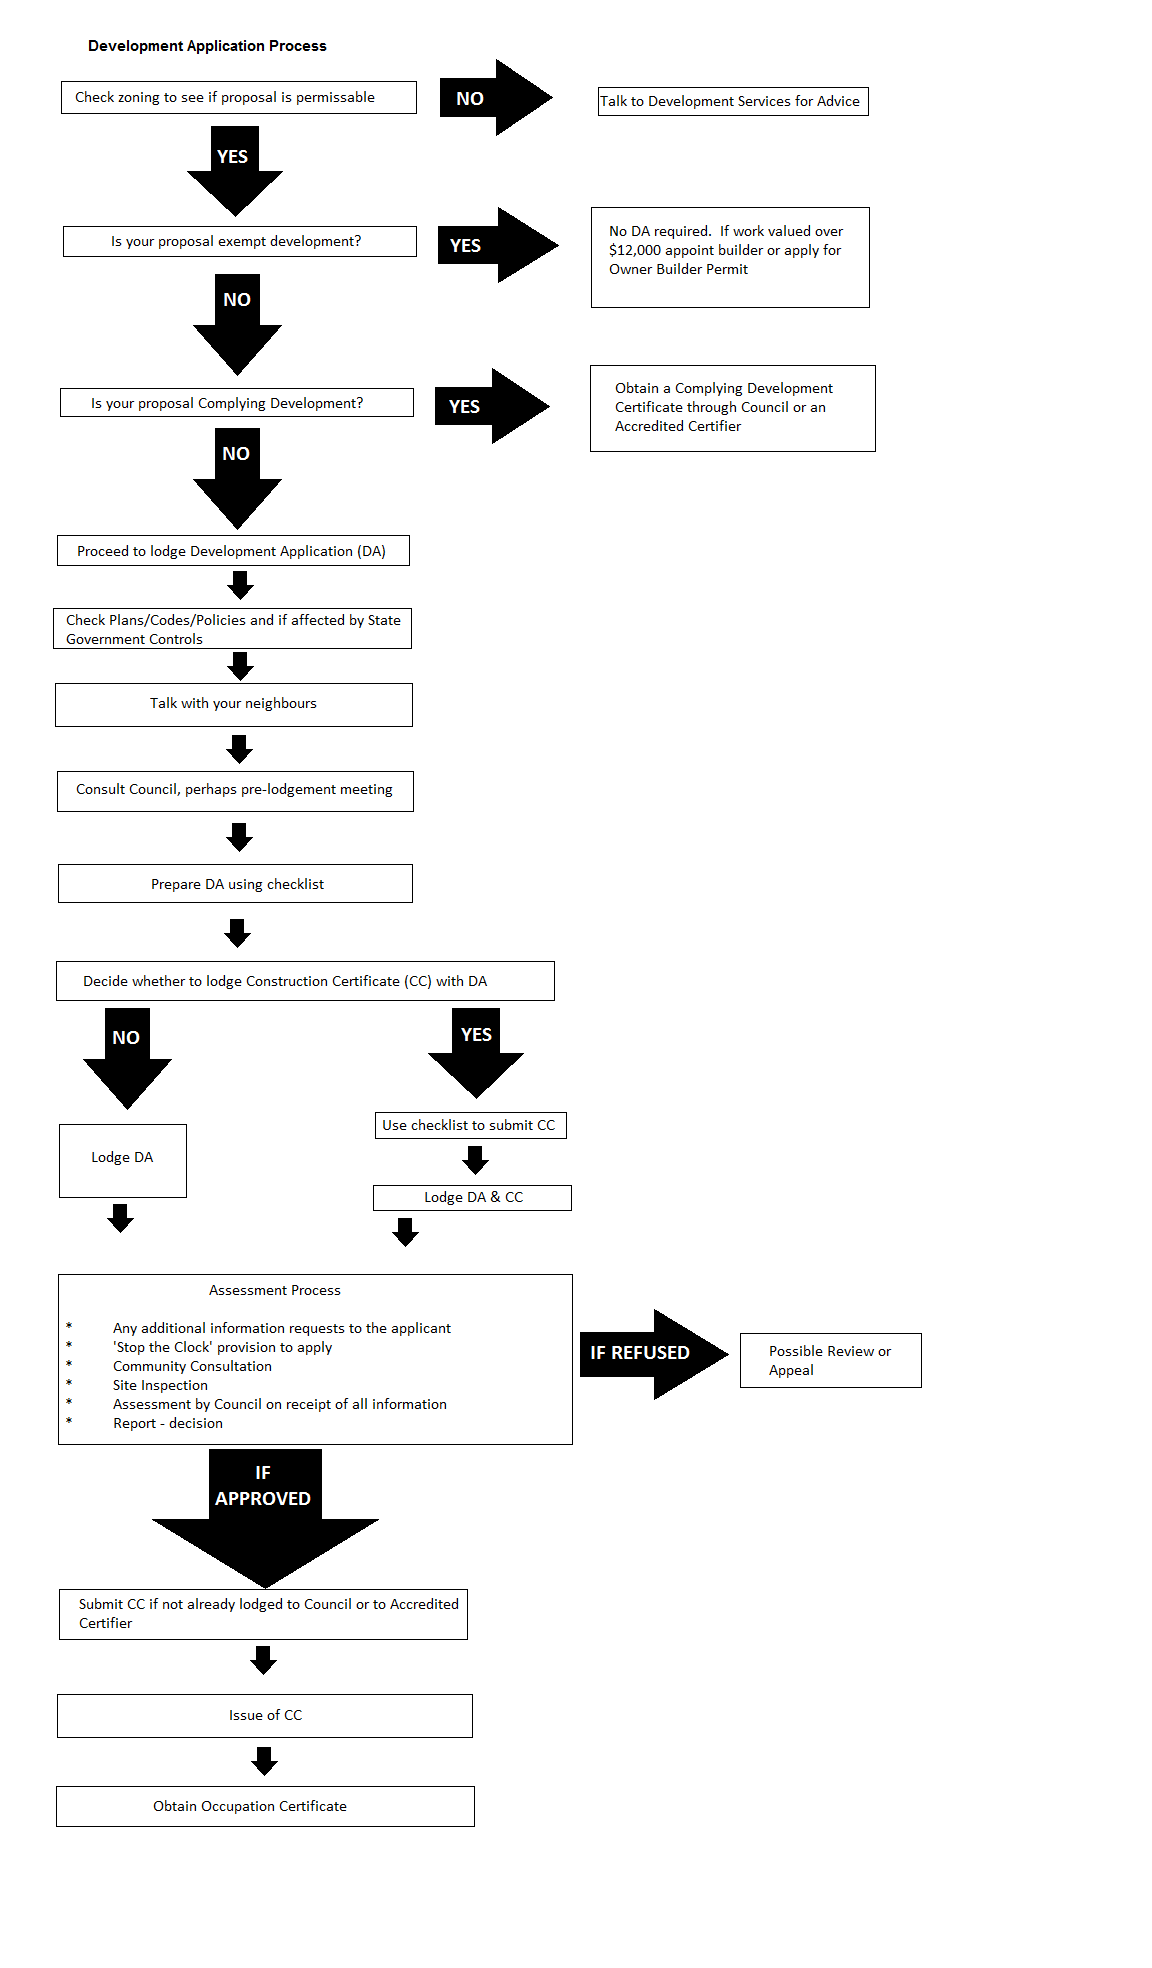 Development Application Process flow chart_3